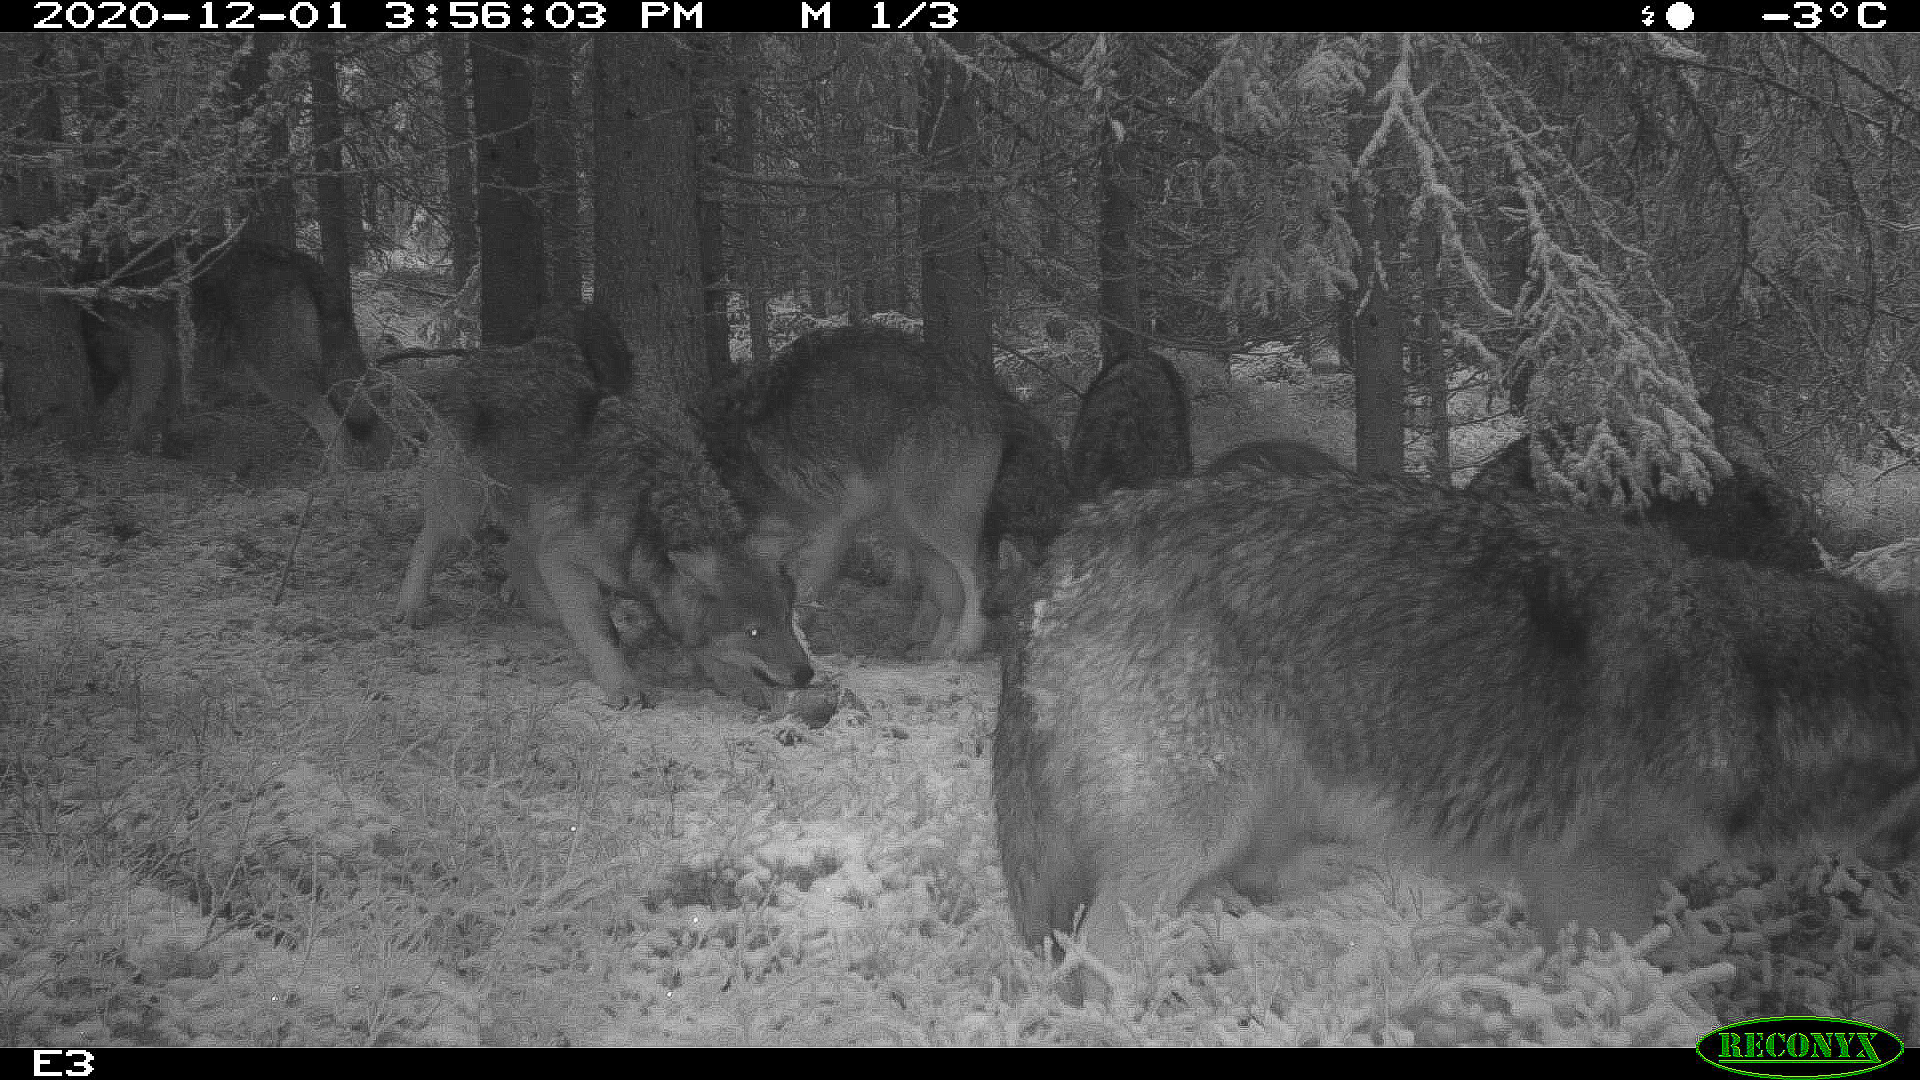 Viltkamerabilde av ulver som spiser slakterester i skogen